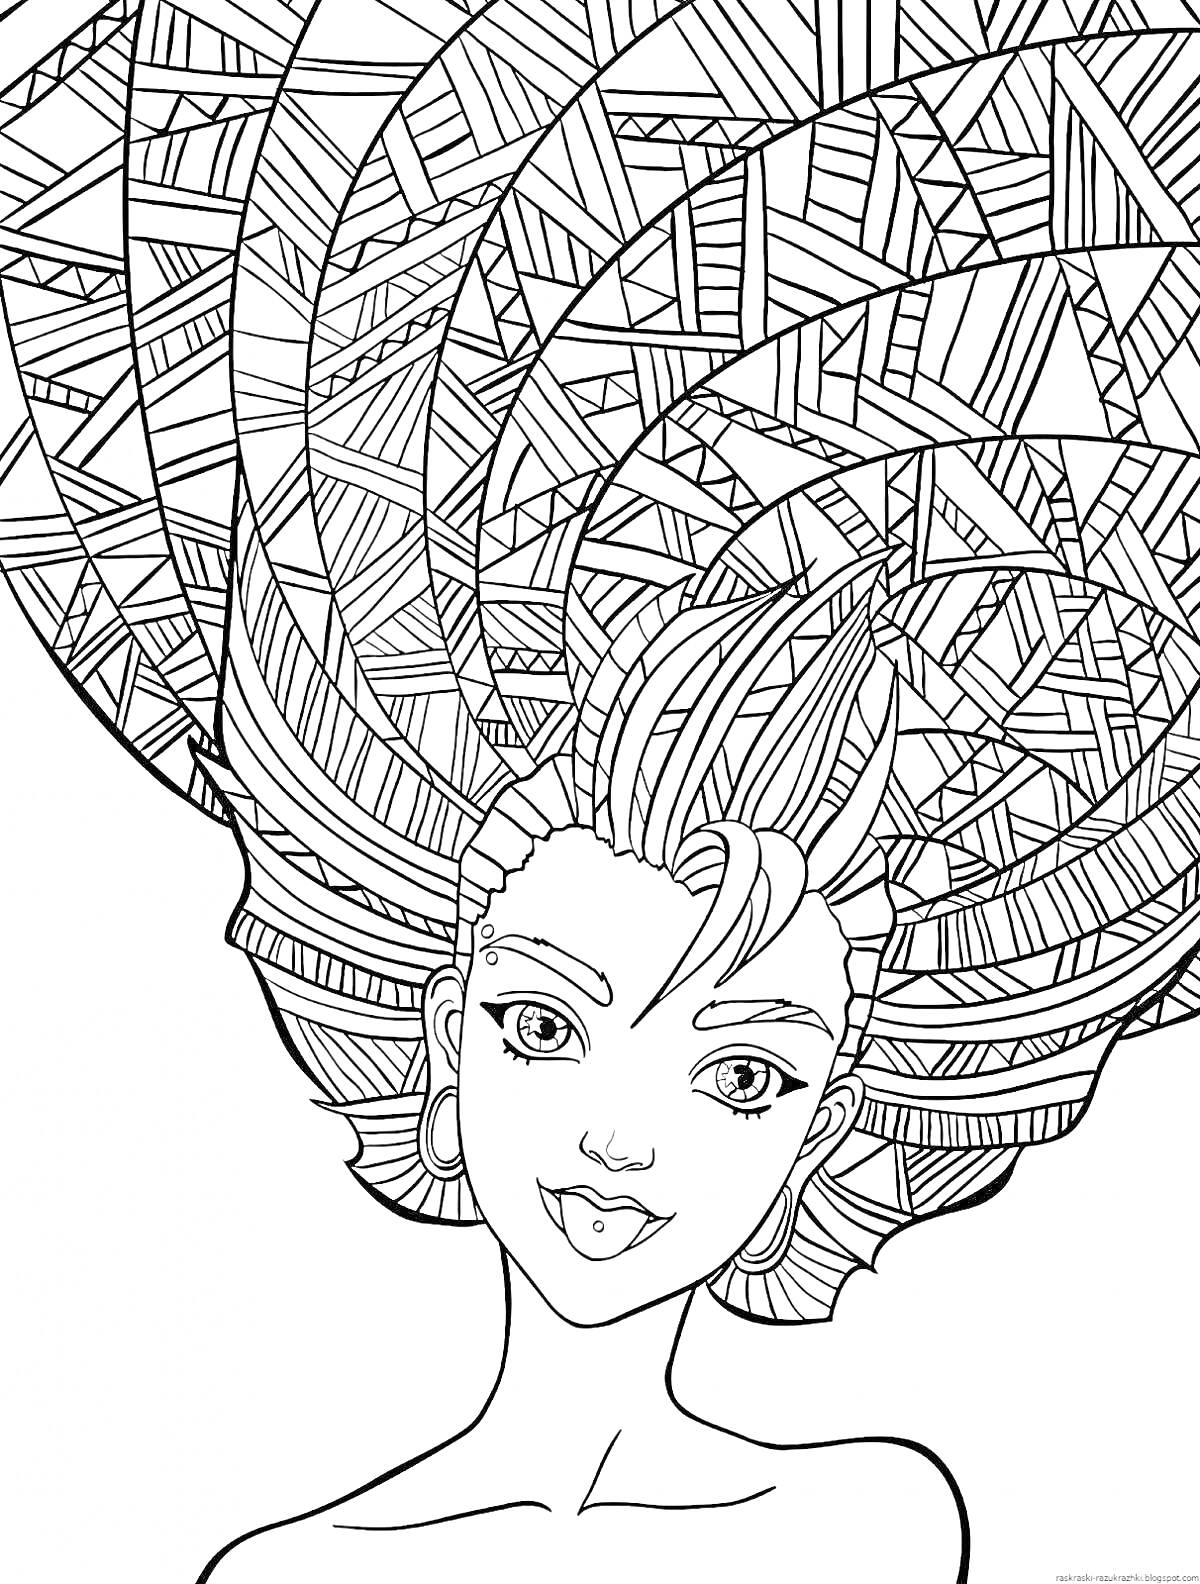 Раскраска Девушка с фантазийной прической, заполненной геометрическими узорами